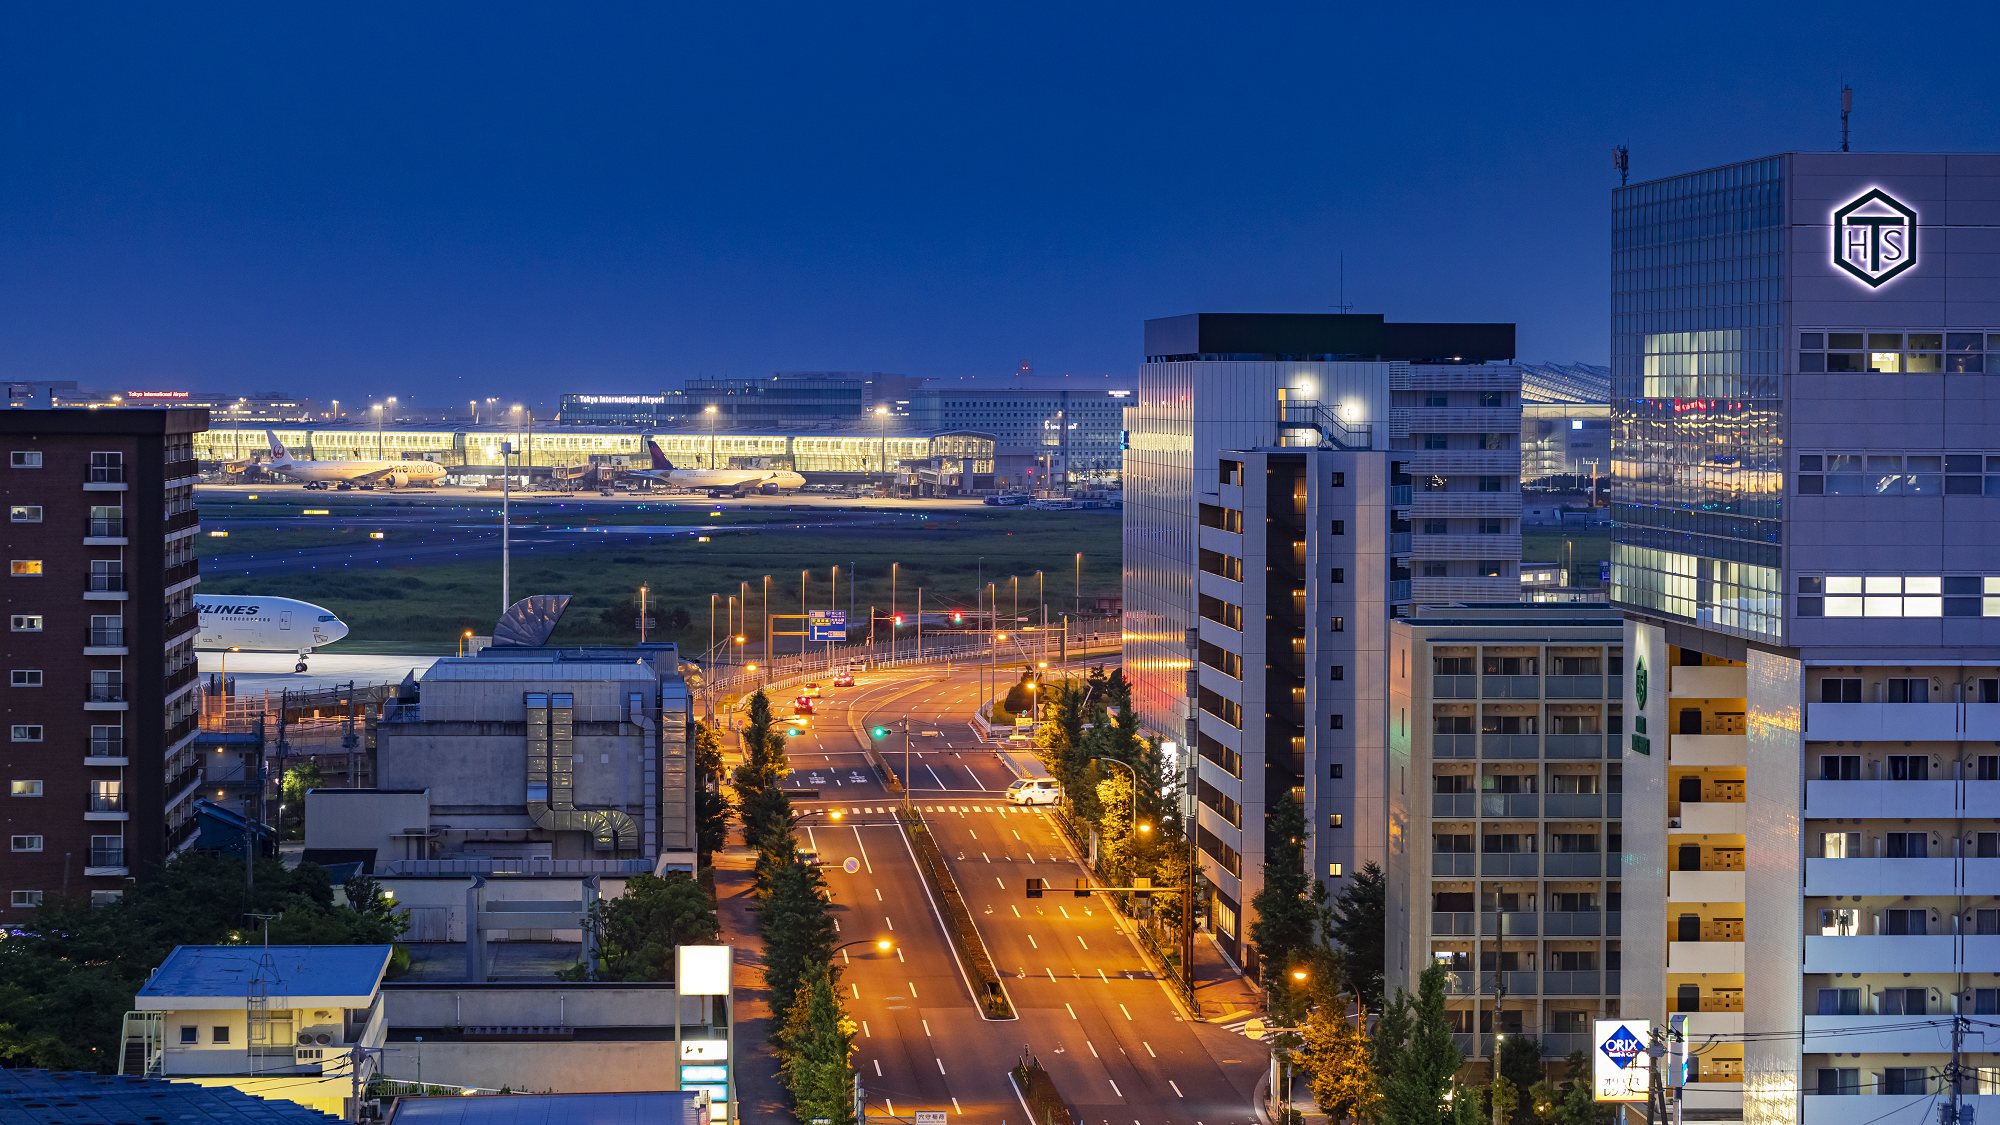 ホテル客室から見える羽田空港の景色※イメージ